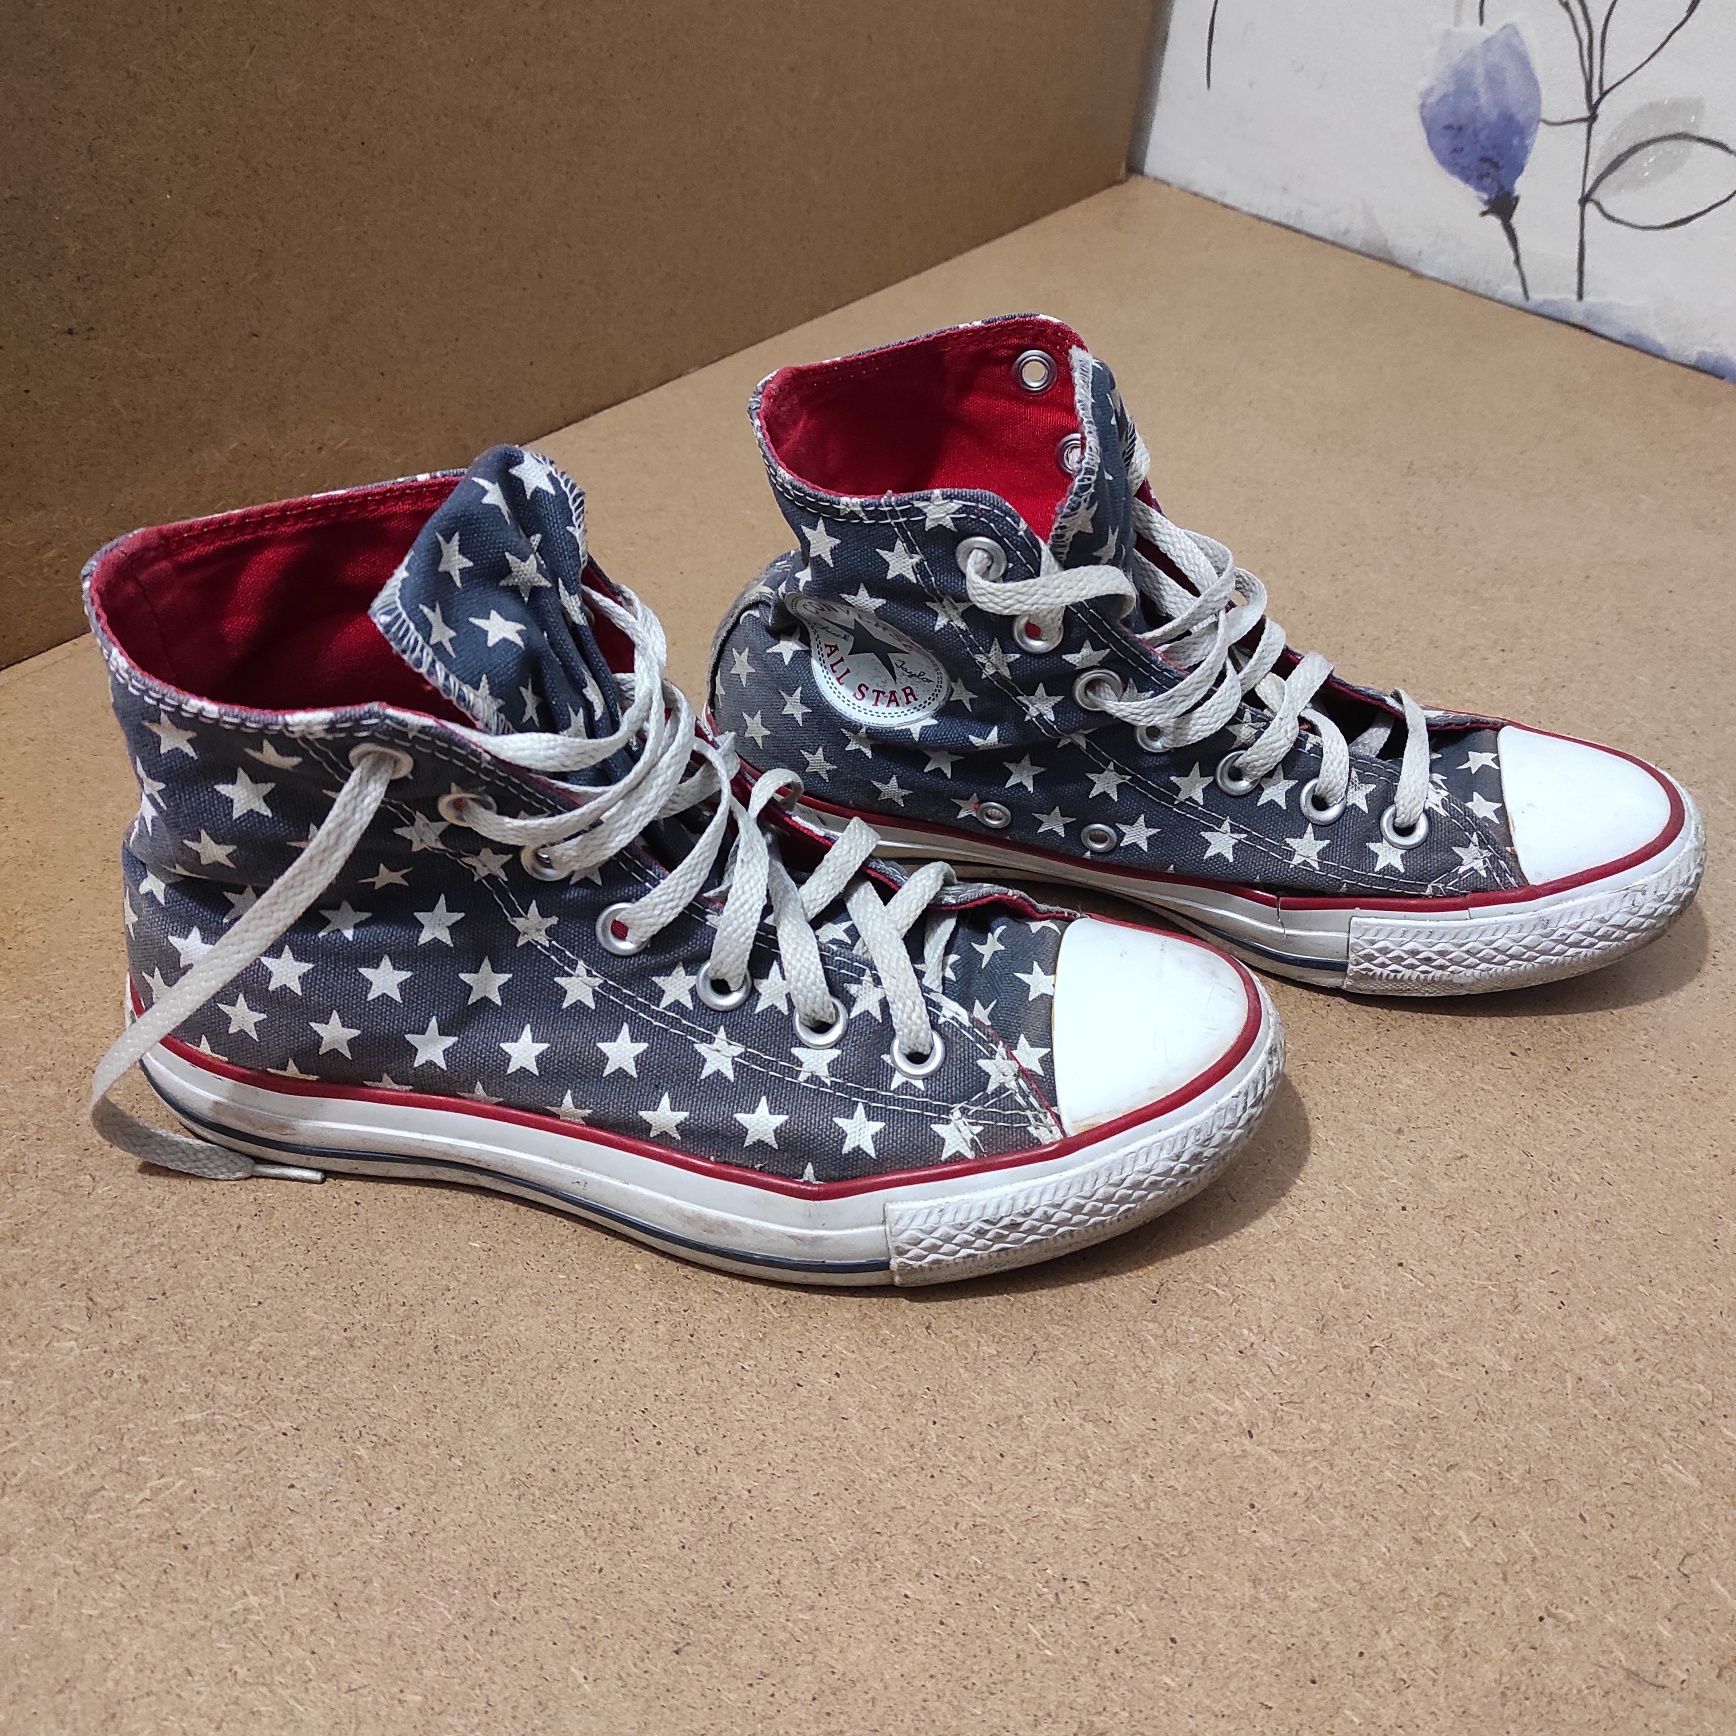 Кеды Converse в цветах Американского флага.